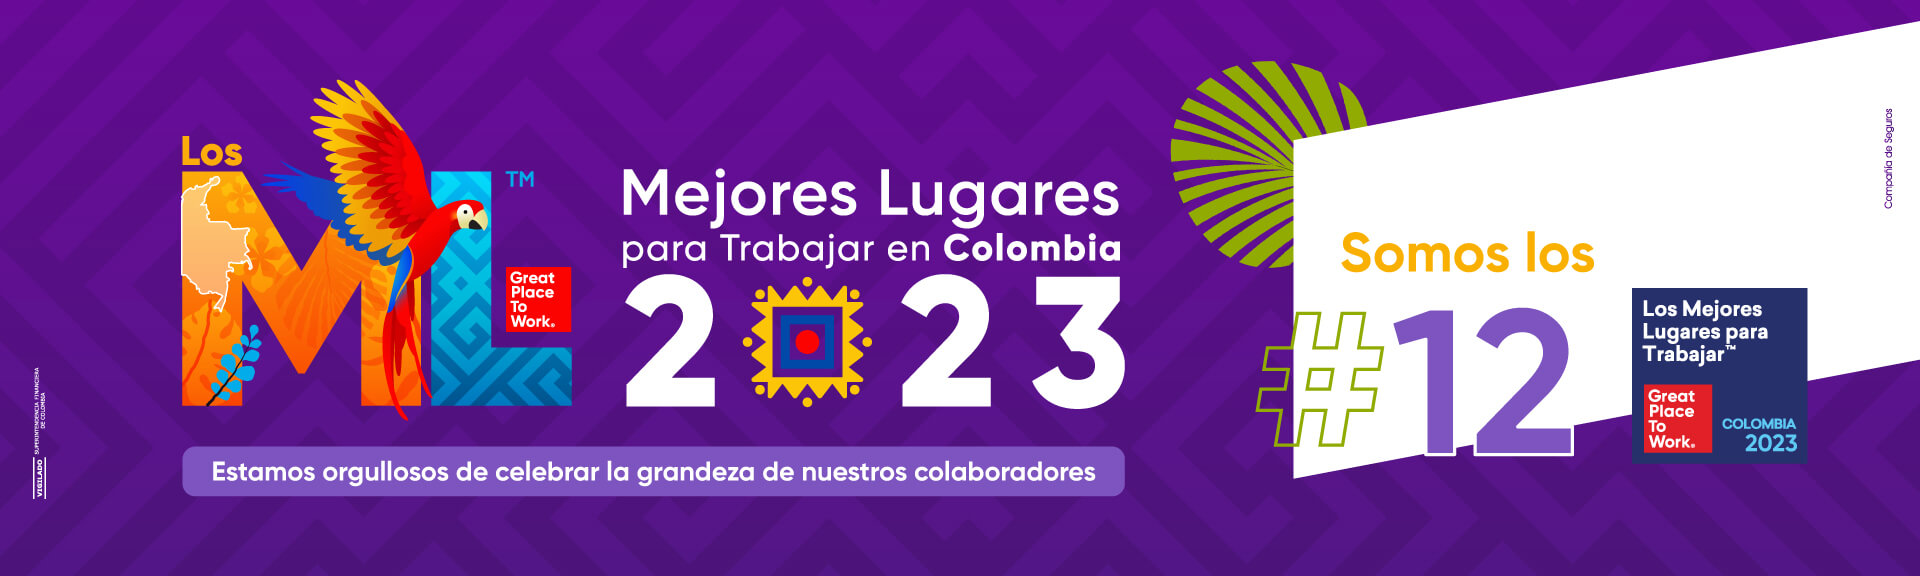 Somos los #12 para trabajar en Colombia